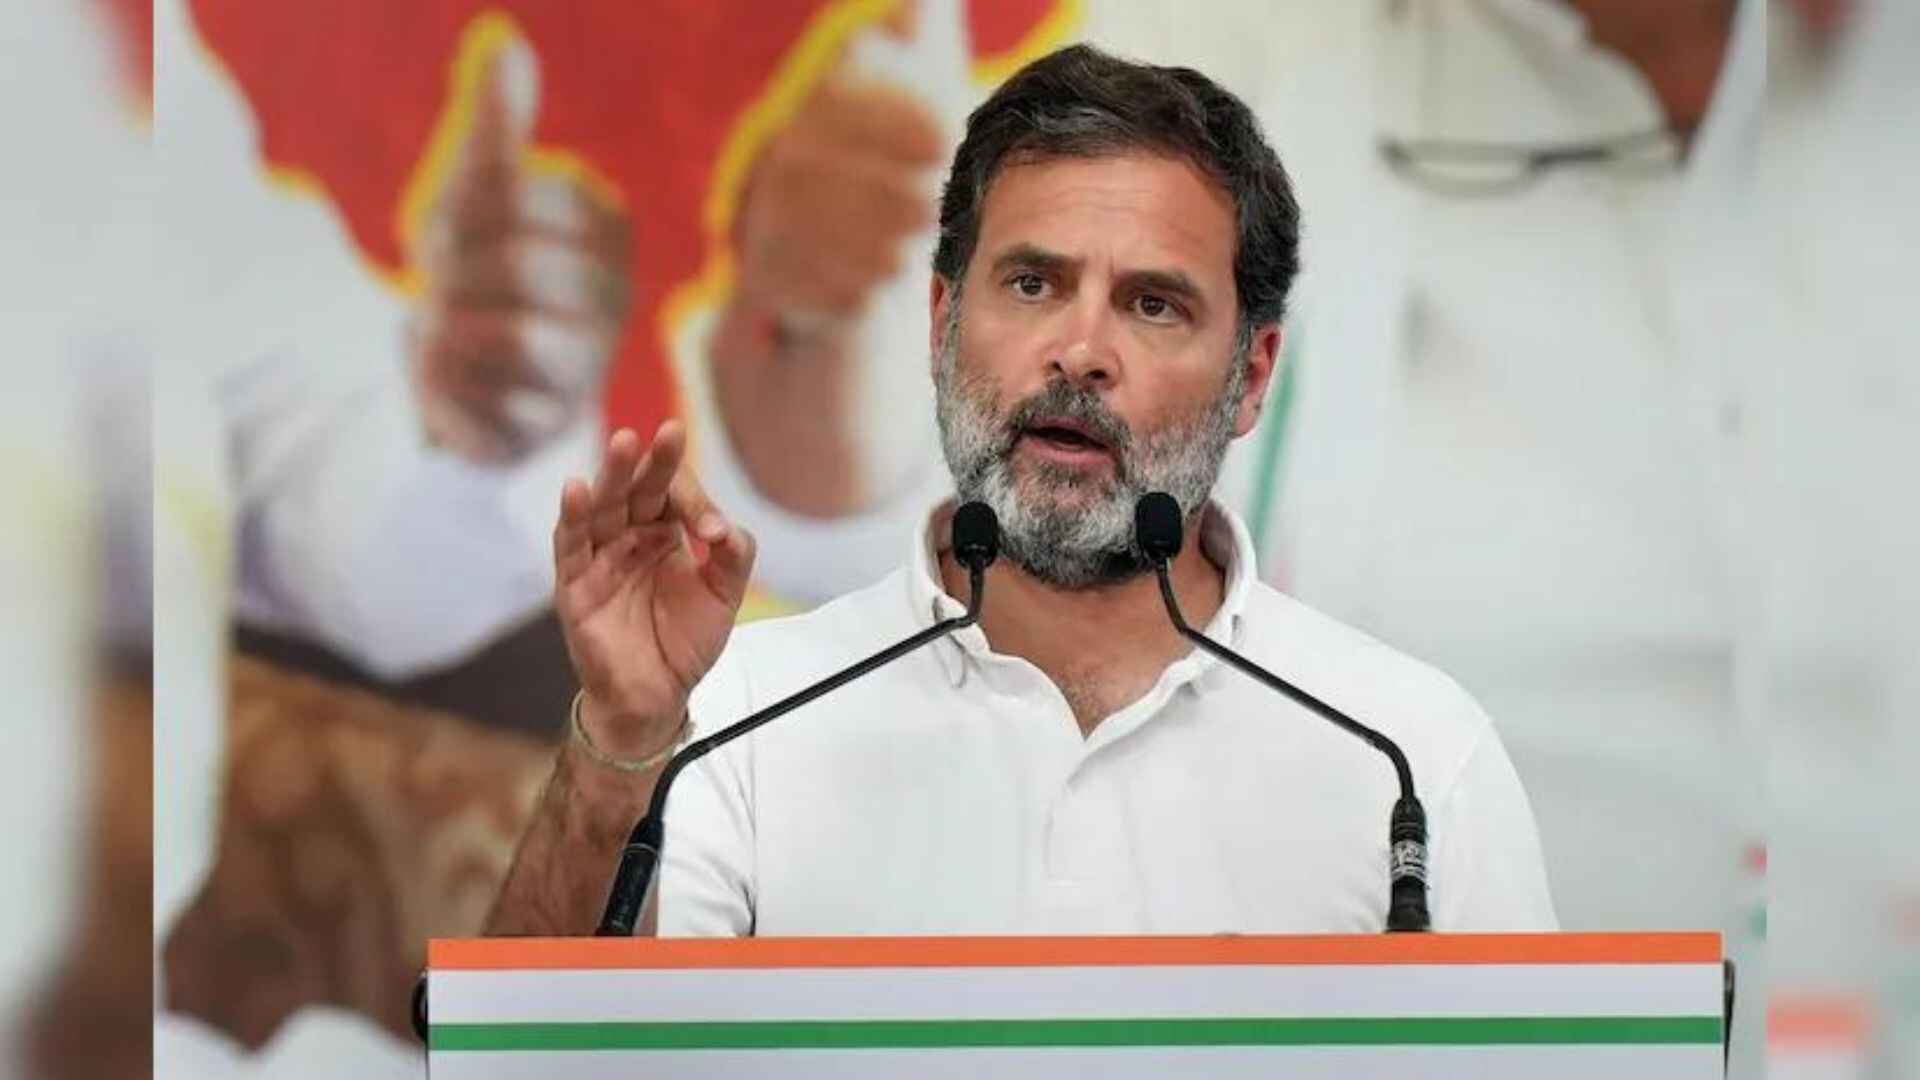 Congress Leader Rahul Gandhi urges people to vote